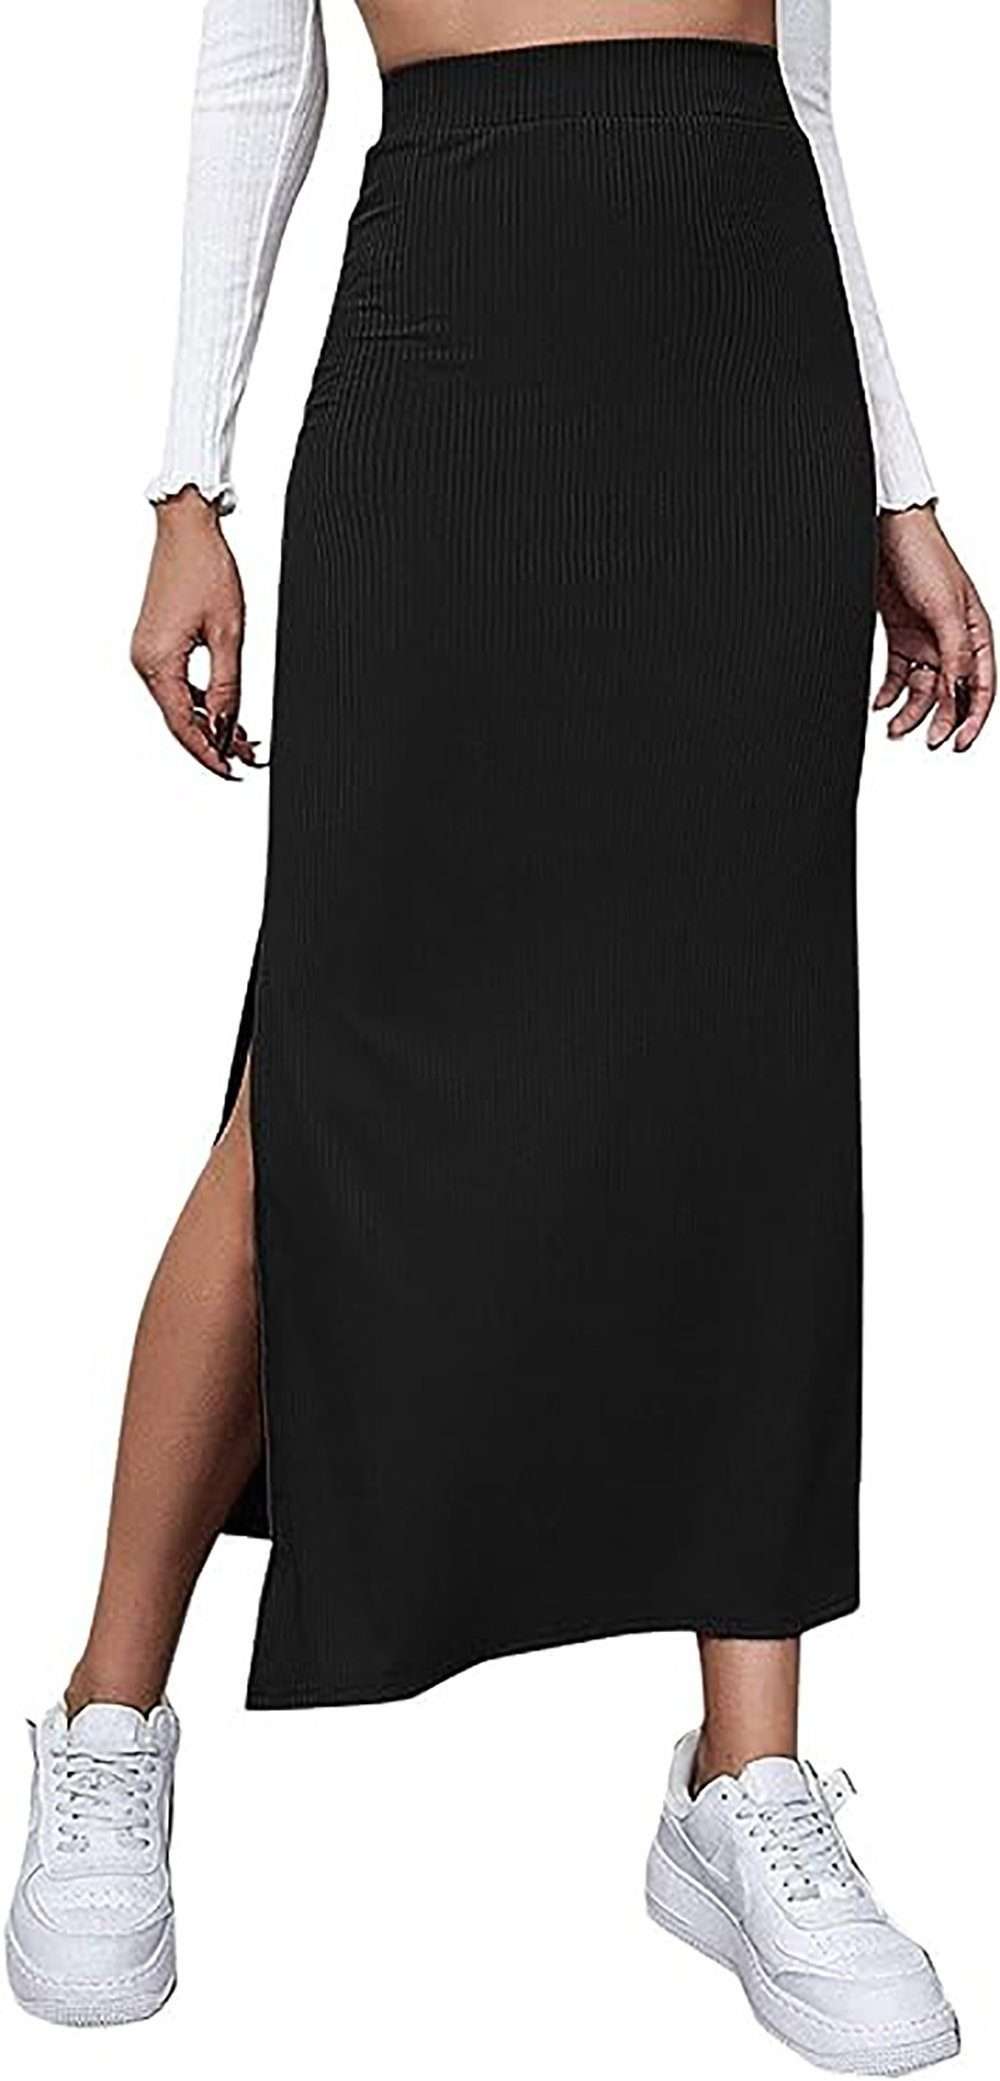 Юбка с запахом, элегантная женская юбка макси, винтажные ретро-юбки в стиле рокабилли с разрезом, длинные юбки с высокой талией